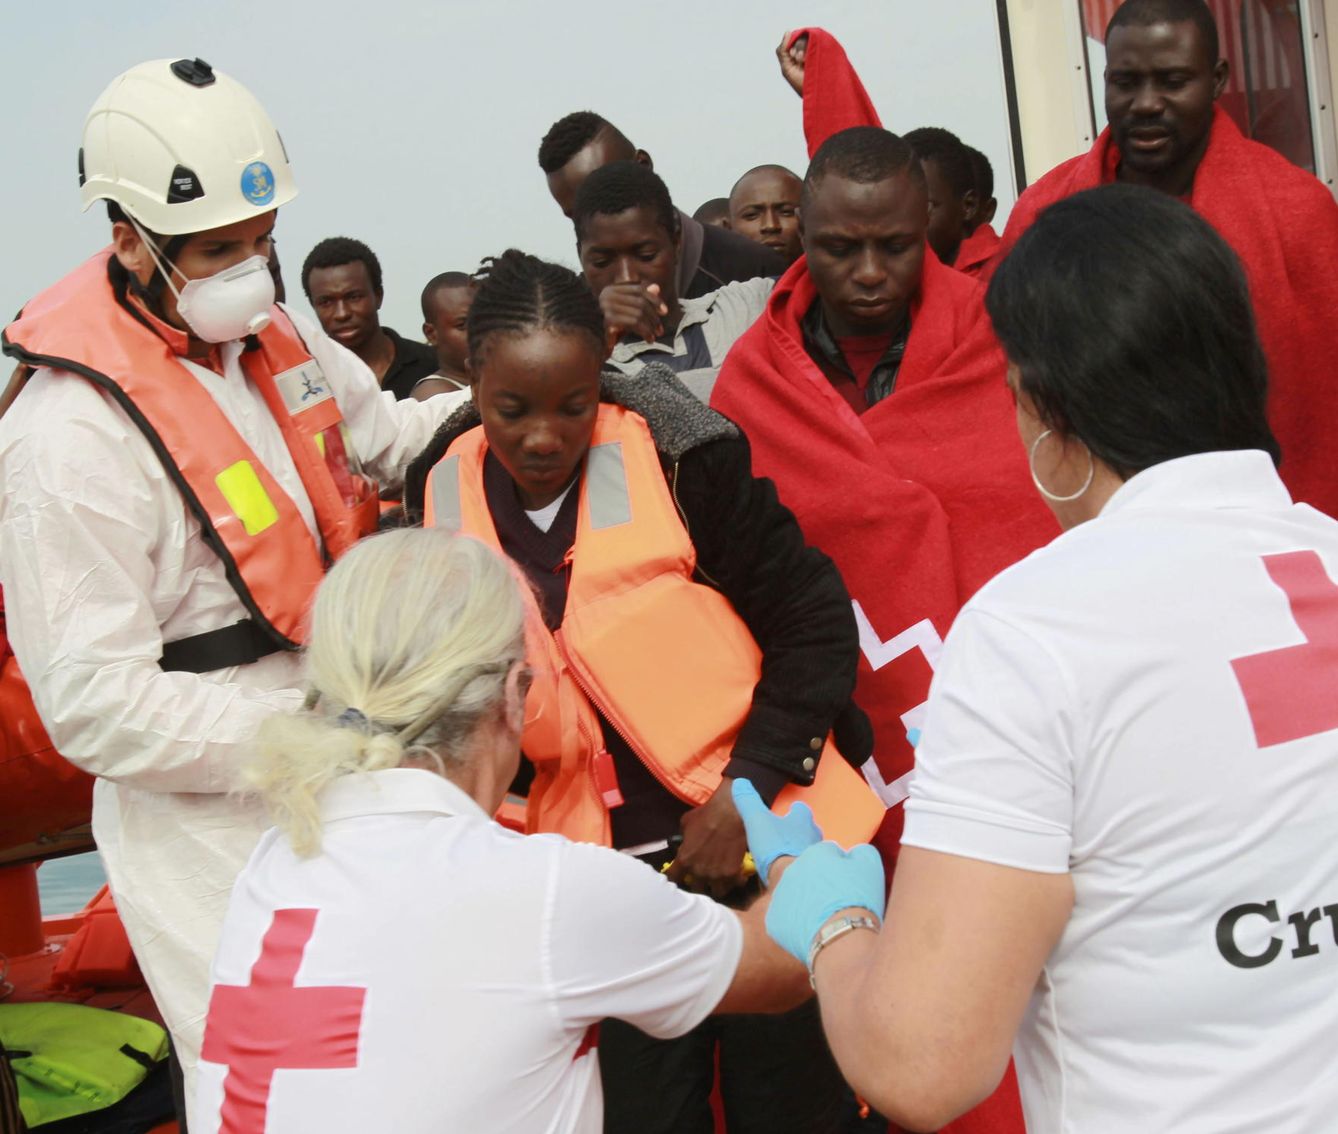 Empleados de Cruz Roja ayudan a desembarcar a inmigrantes subsaharianos. (EFE)